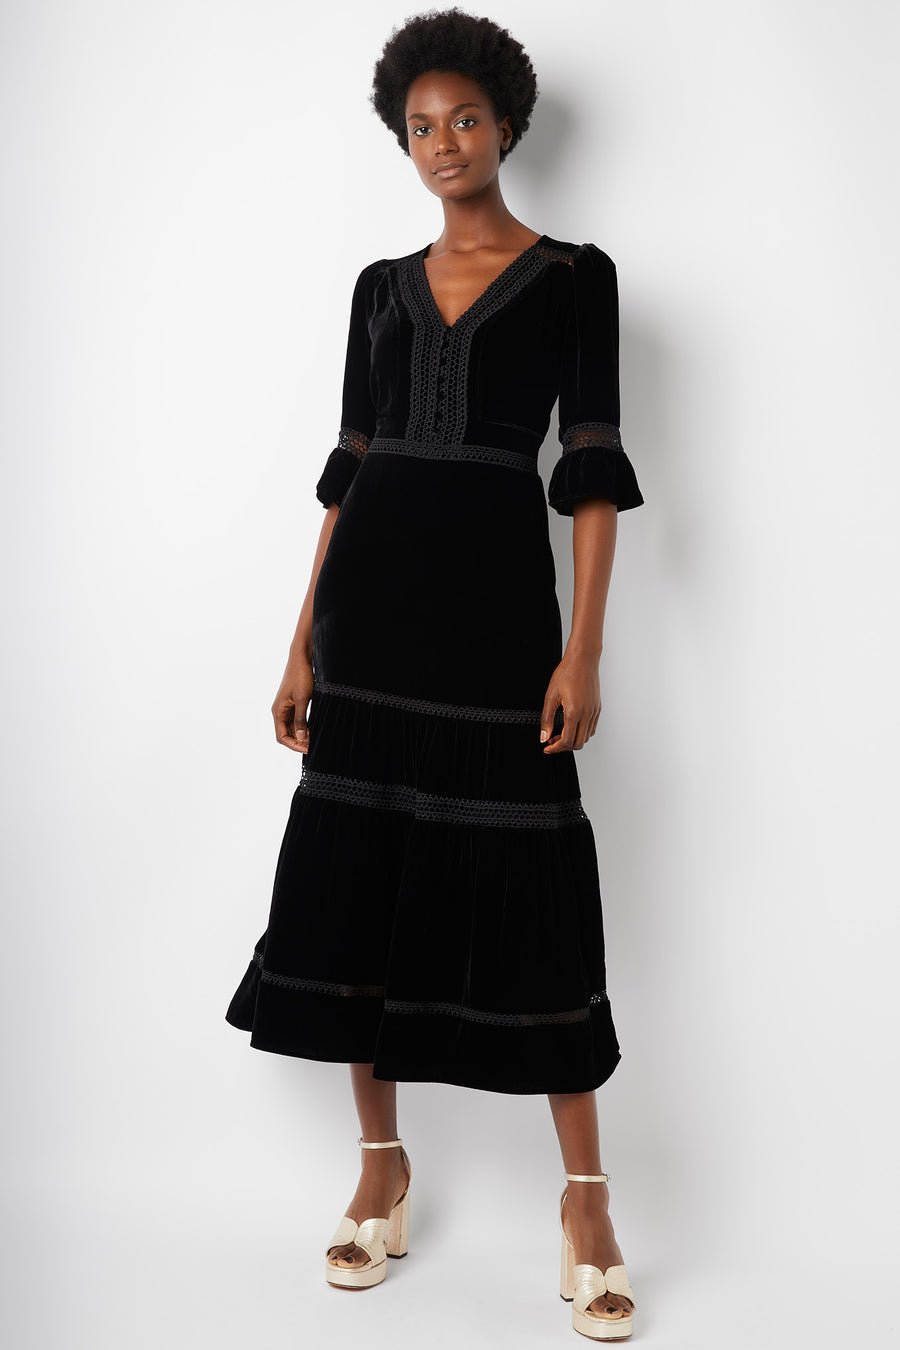 Coralie Velvet Dress - Black - Regular